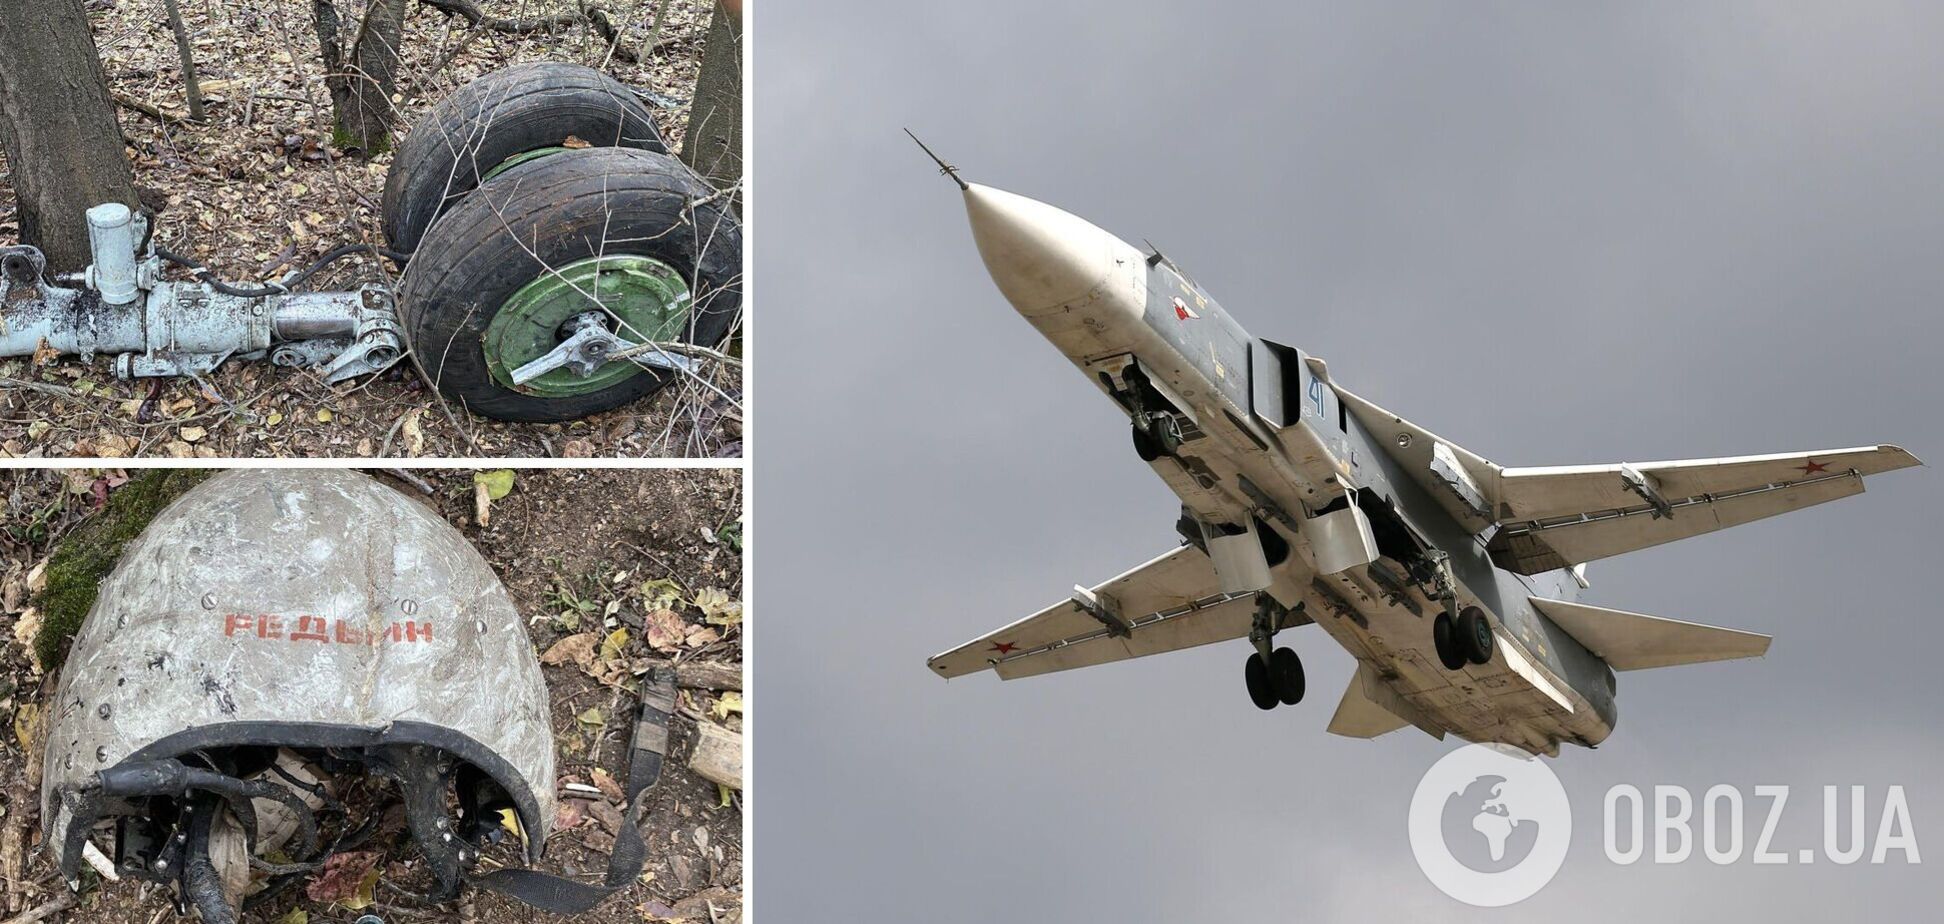 Улетал: в сети показали, что осталось от российского Су-24М, сбитого возле Бахмута. Фото и видео